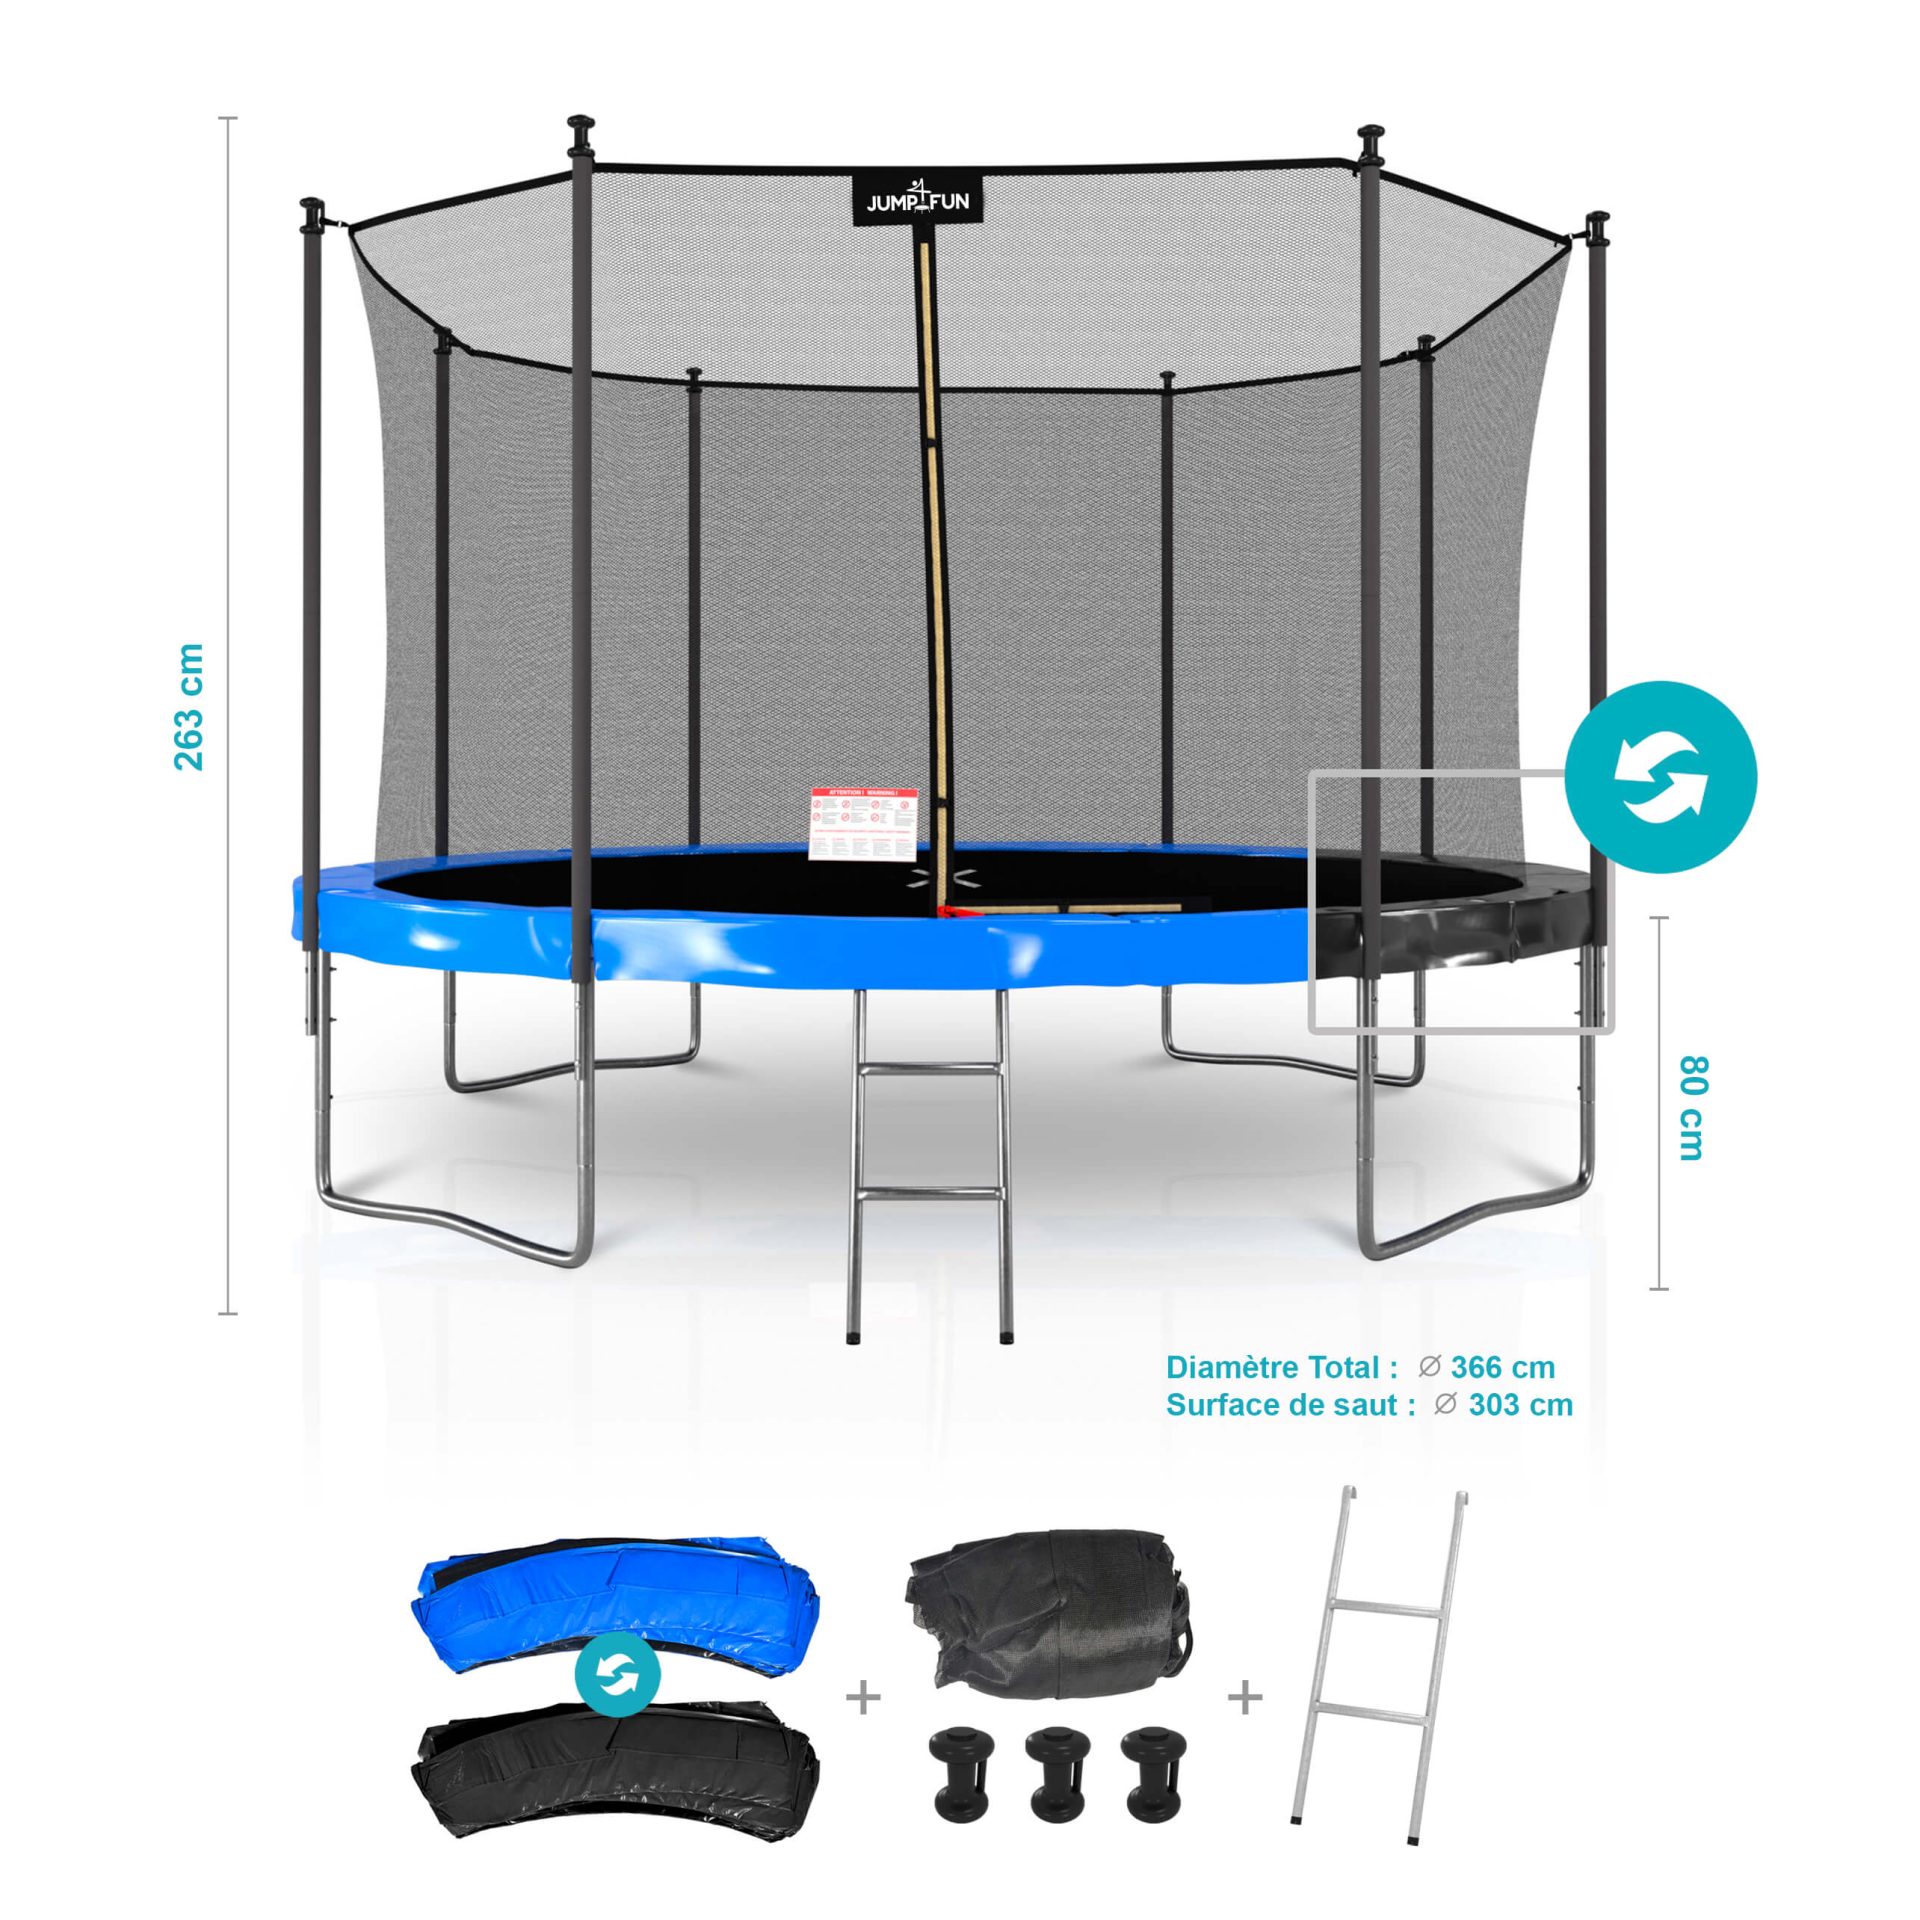 Comment et selon quels critères choisir son trampoline ?